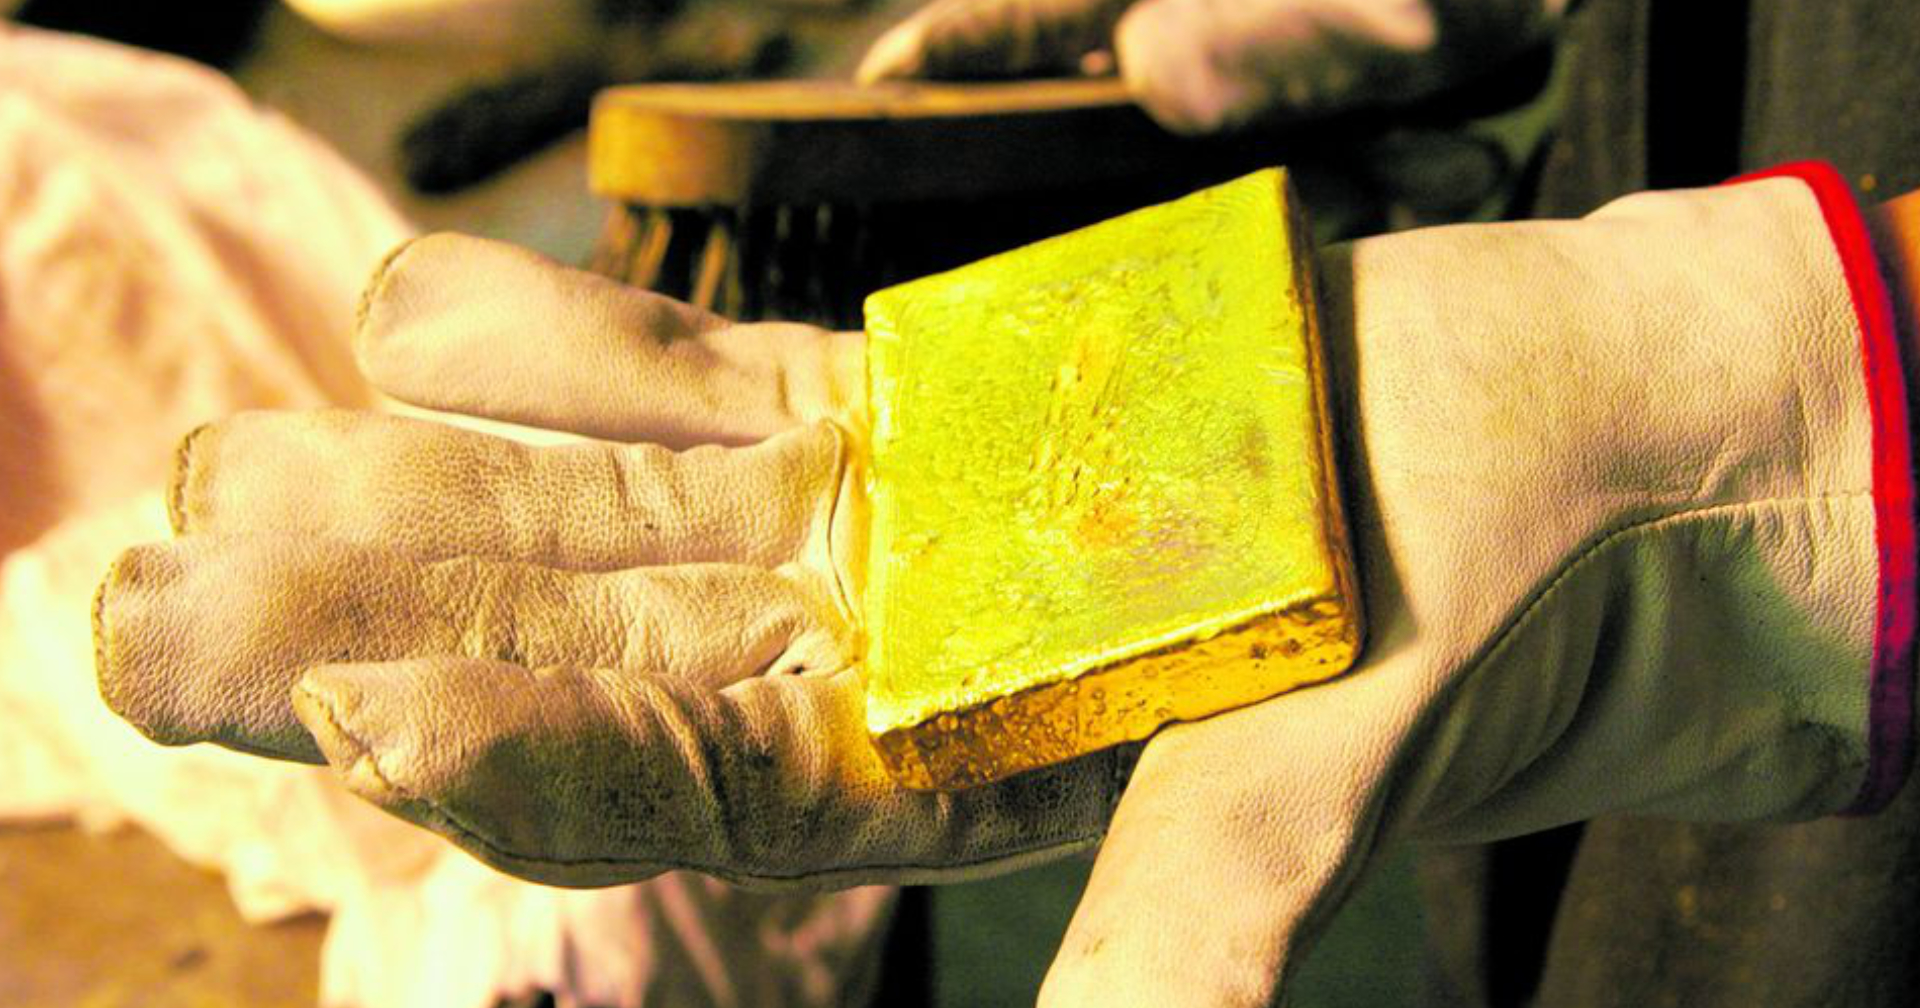 จีนพบแหล่งแร่ทองคำขนาดใหญ่ มูลค่า 3 ล้านล้านดอลลาร์ ใช้ผลิตทองคำได้ 2,000 ตัน นาน 20 ปี